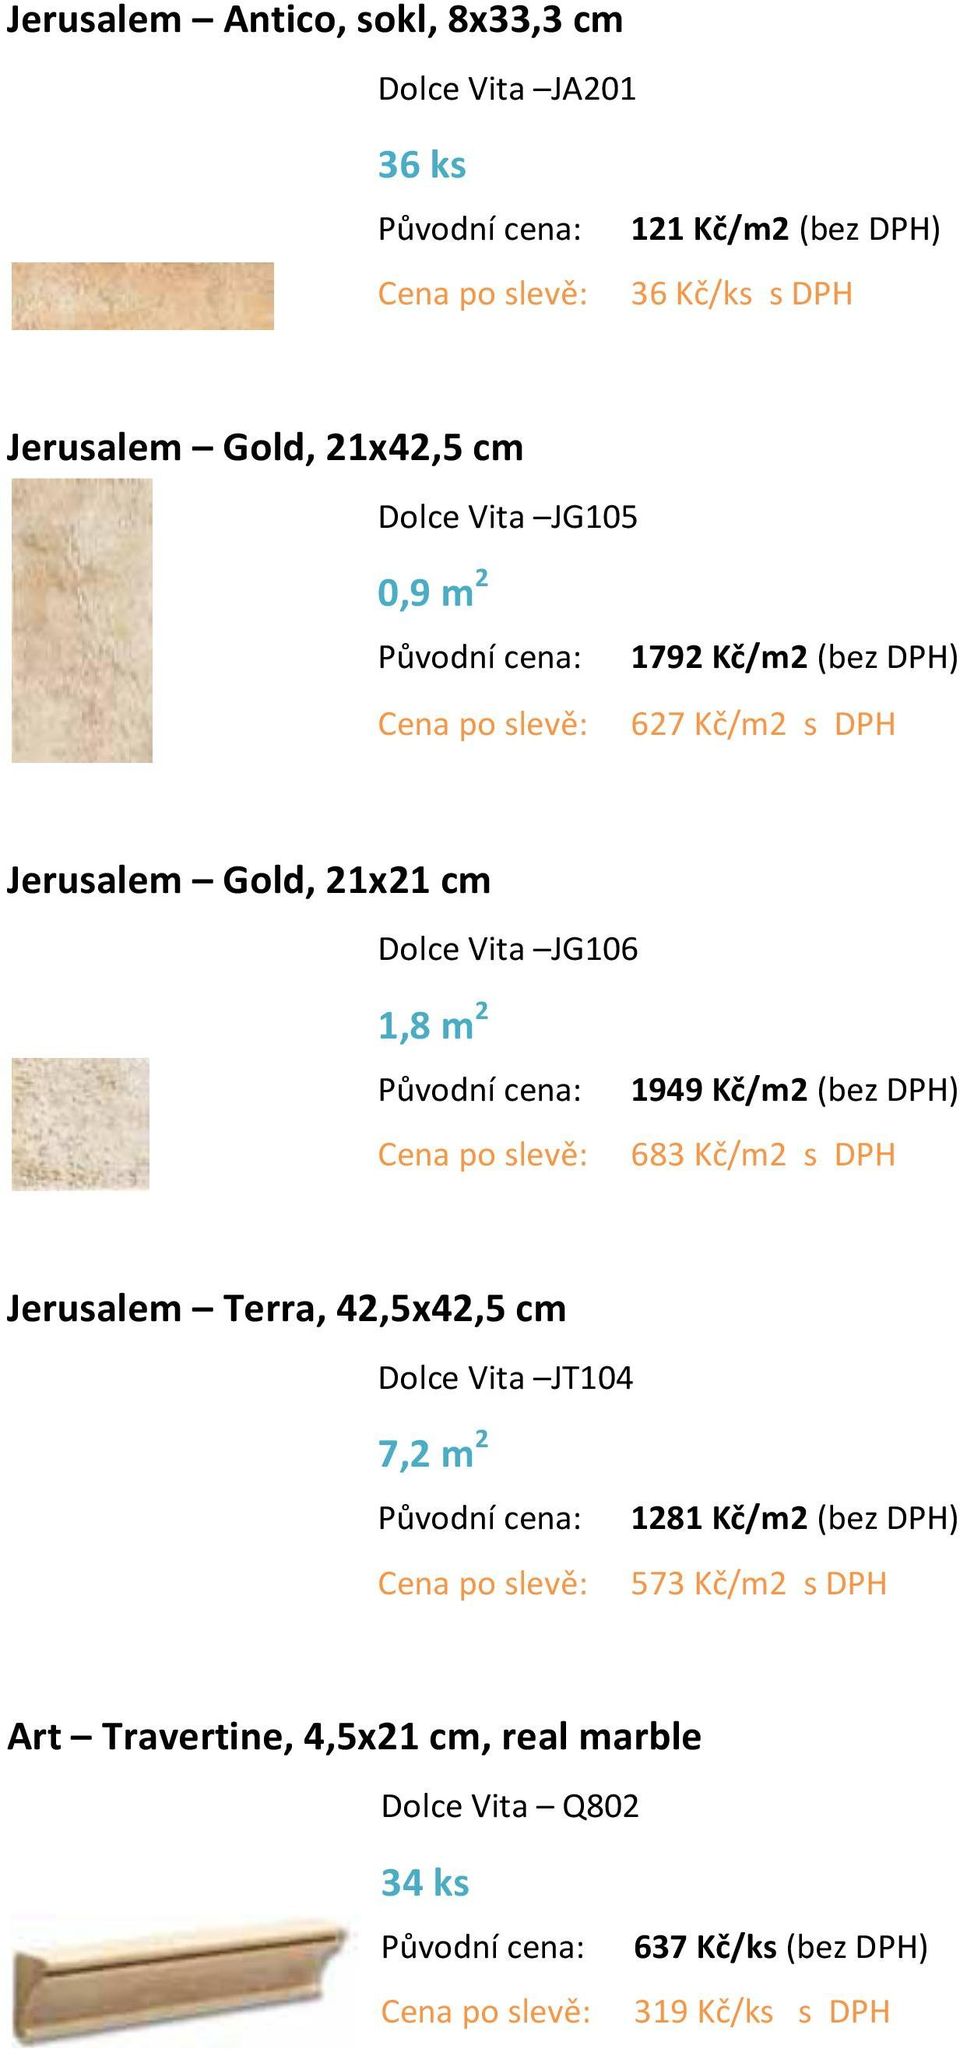 JG106 1,8 m 2 1949 Kč/m2 (bez DPH) 683 Kč/m2 s DPH Jerusalem Terra, 42,5x42,5 cm Dolce Vita JT104 7,2 m 2 1281